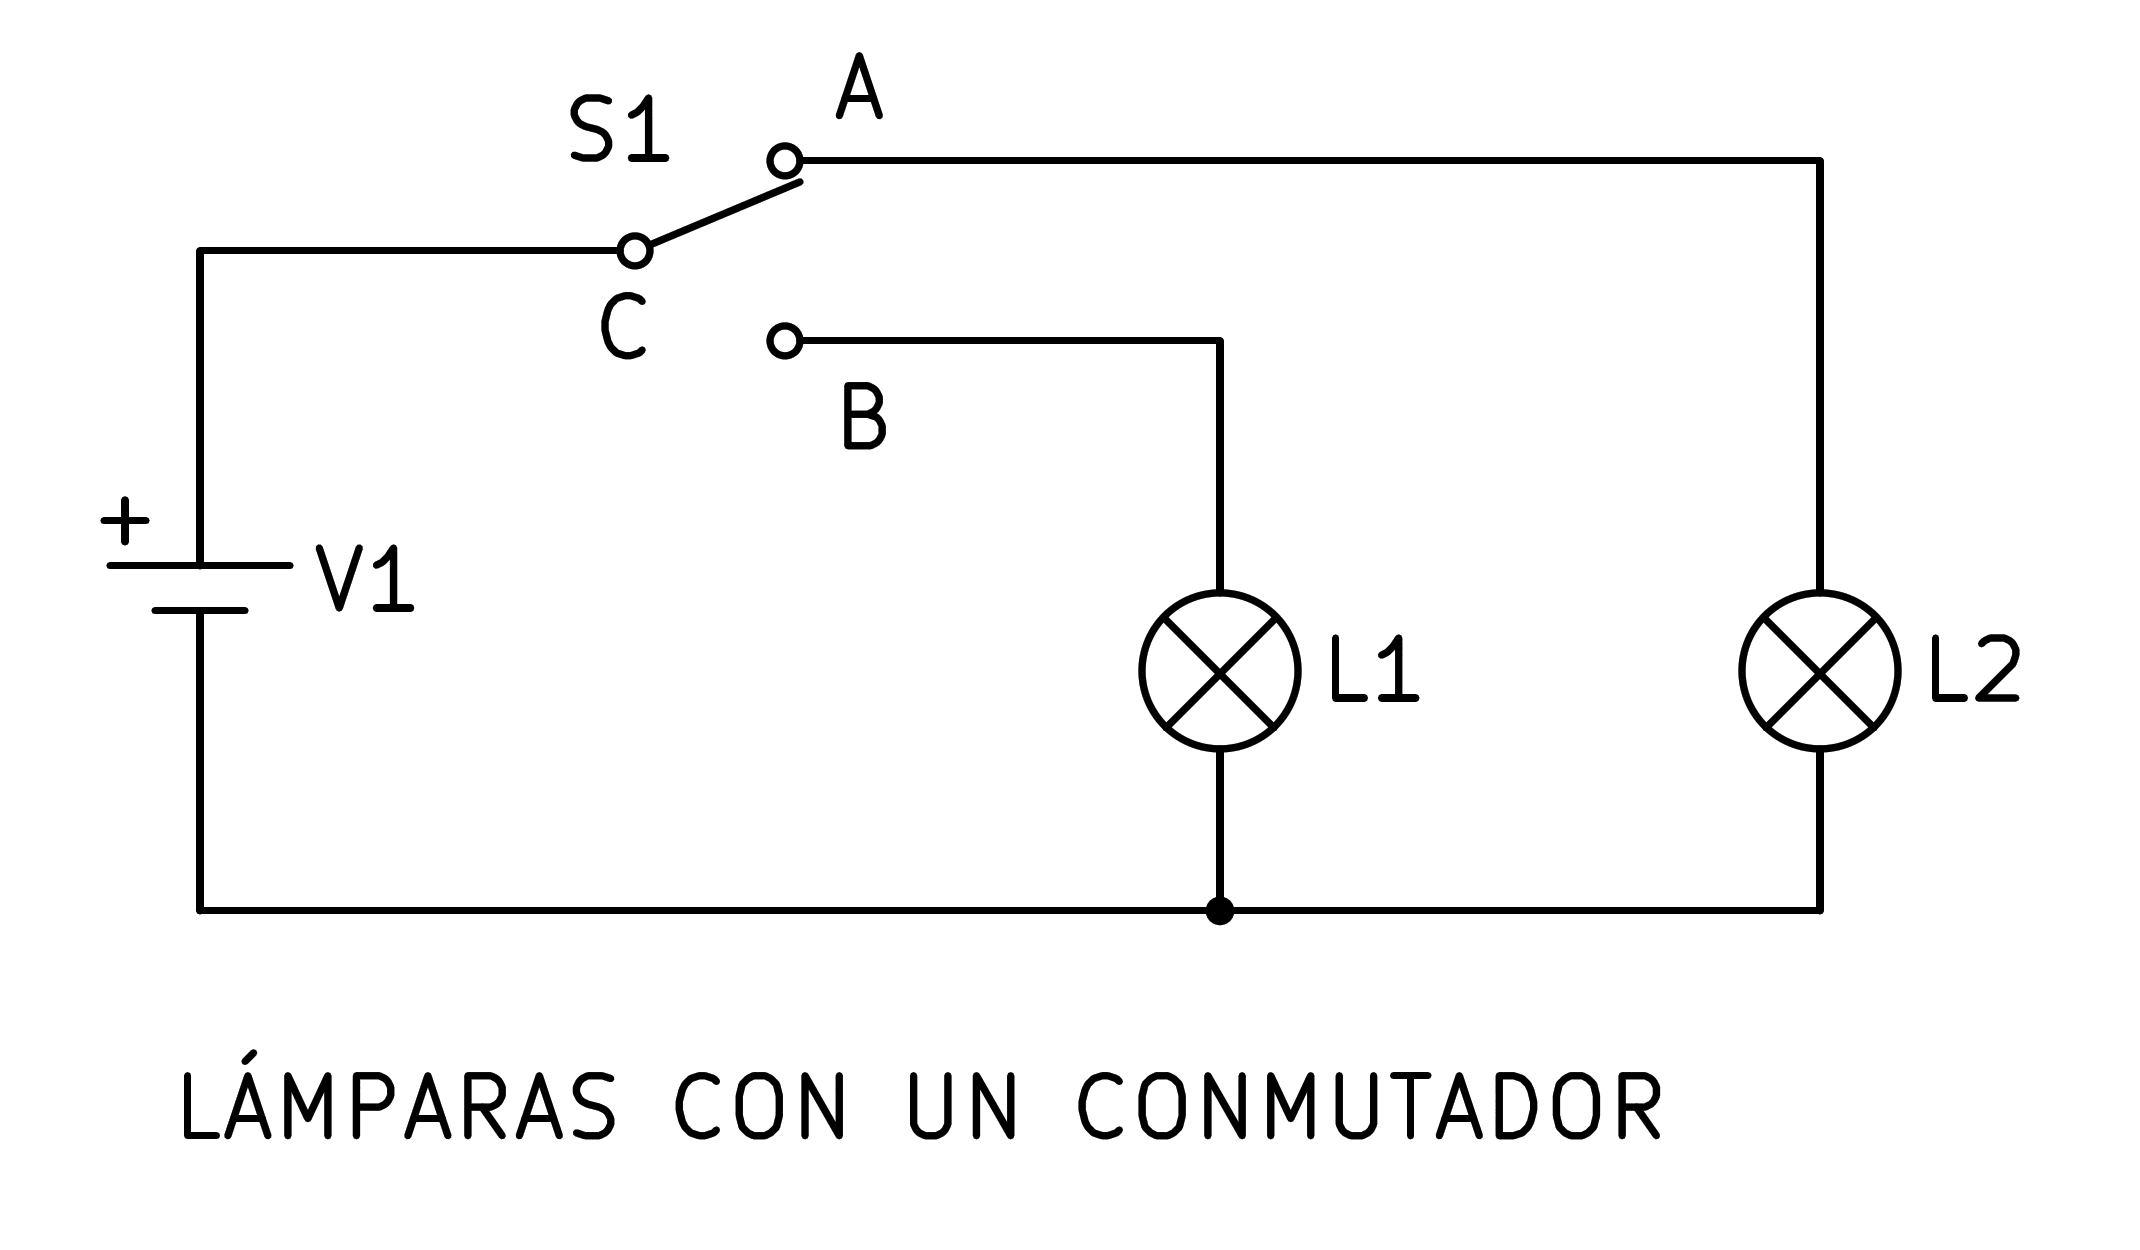 _images/electric-bornas-conmutador.png